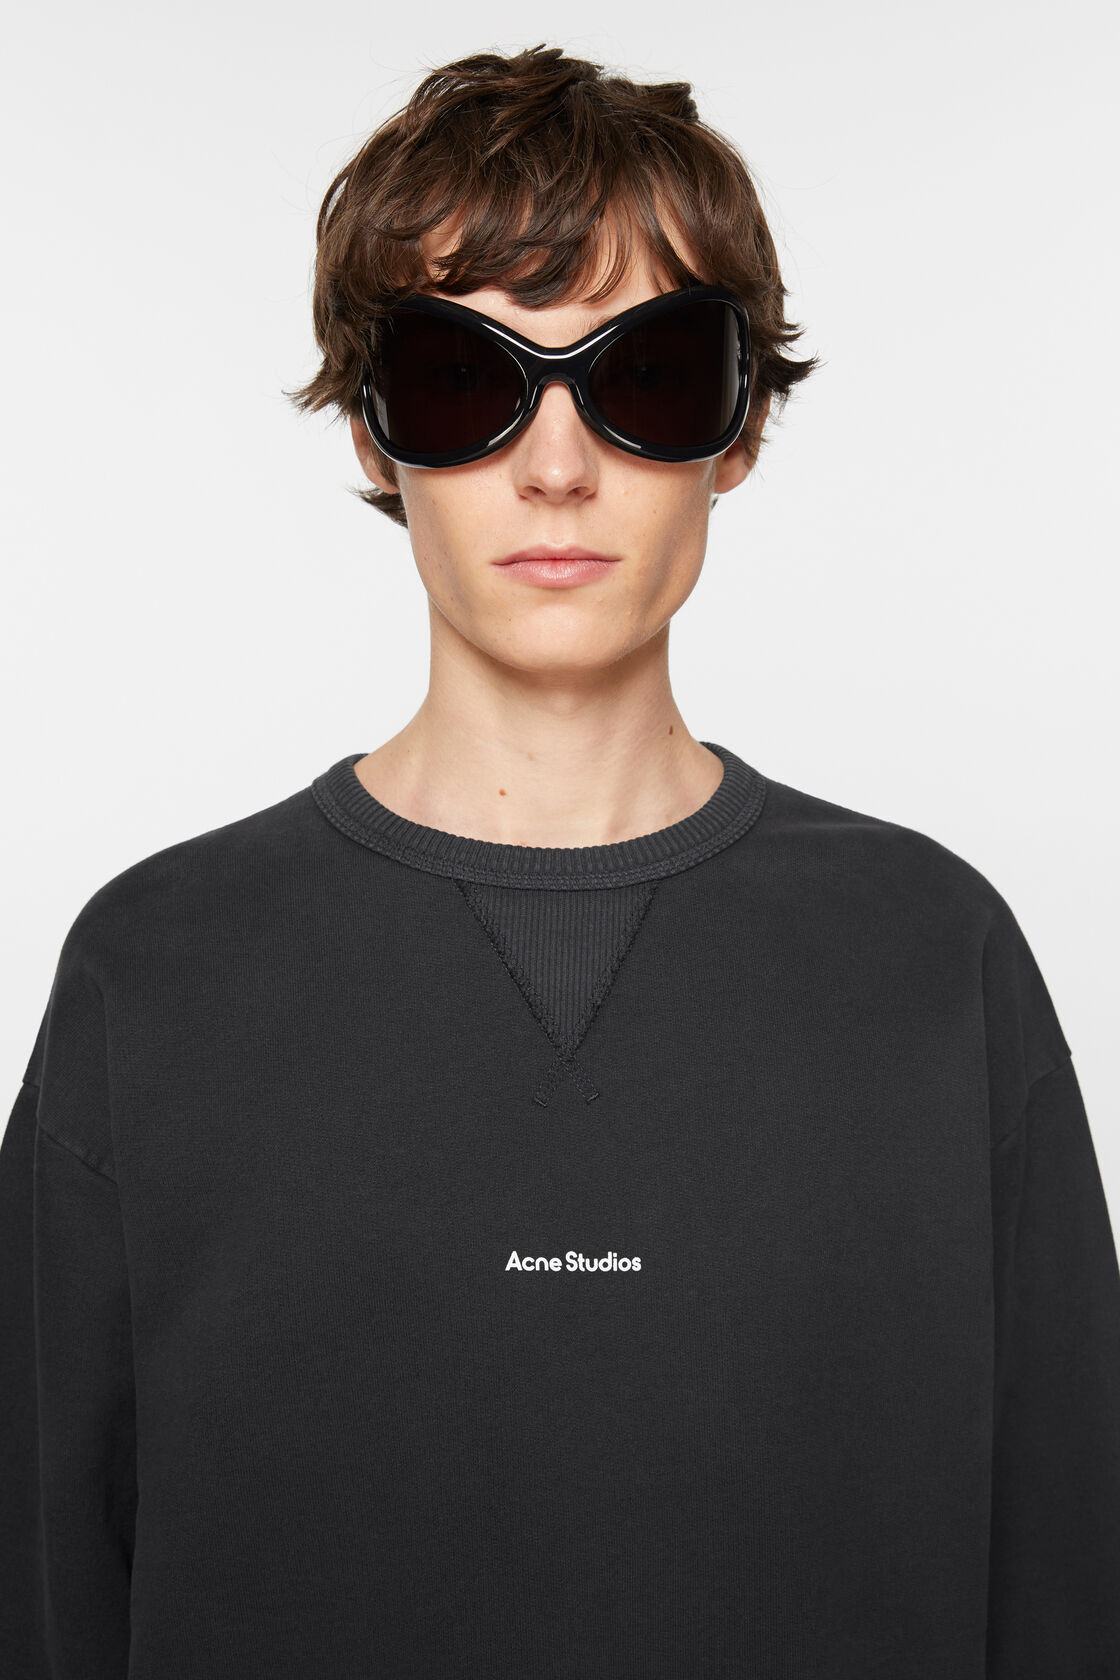 ACNE STUDIOS Stamp Oversize Sweatshirt in Black M